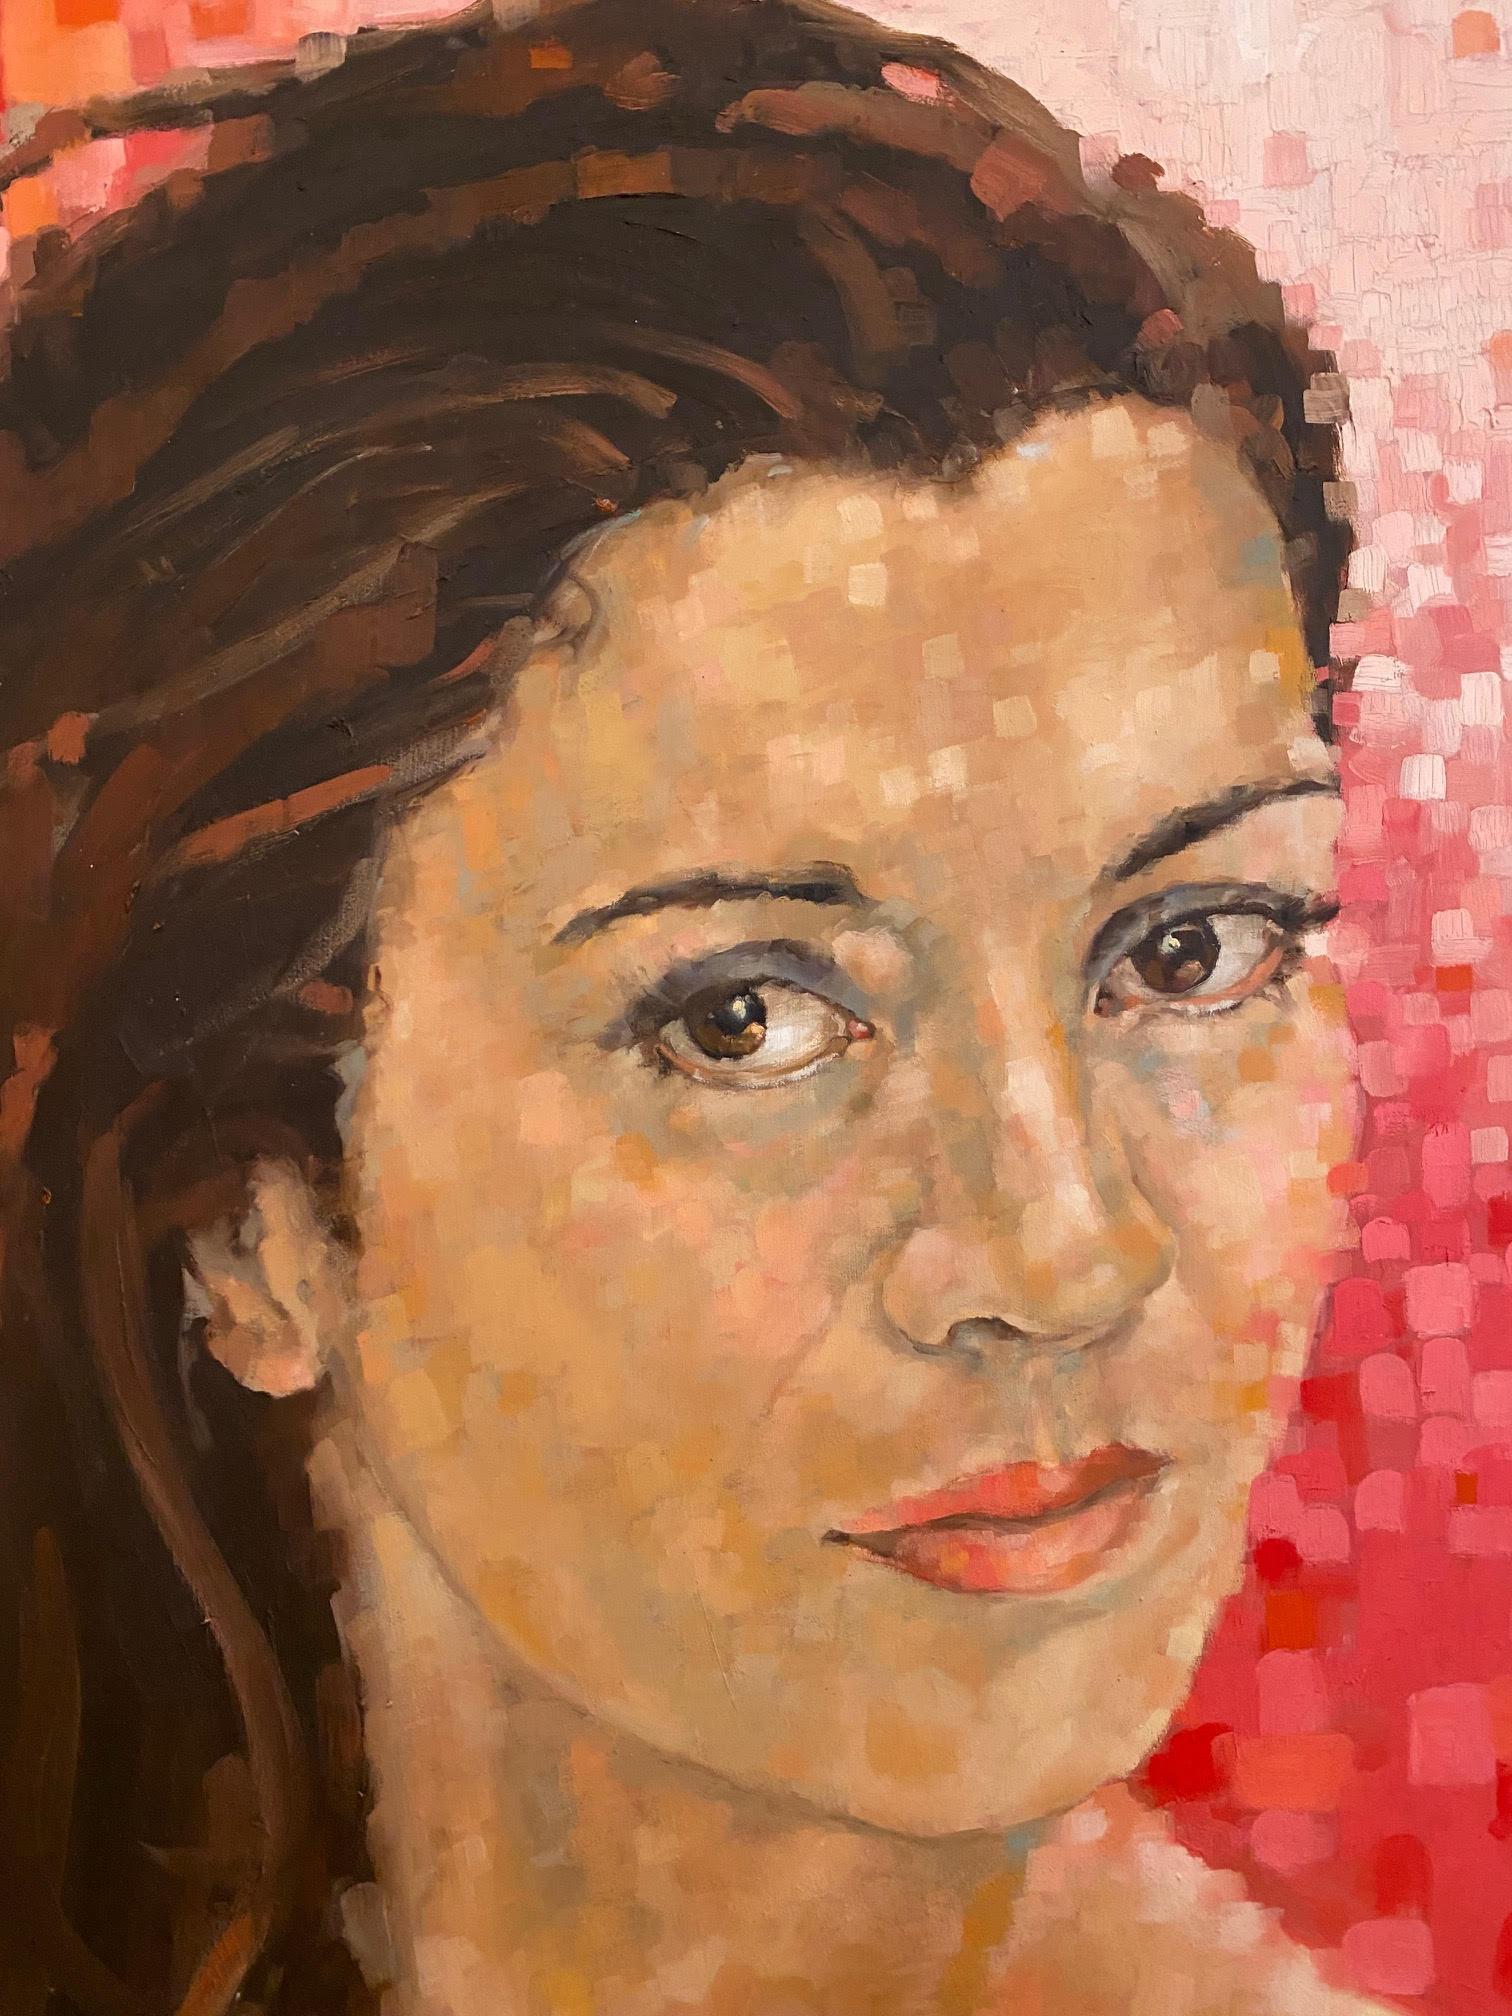 Portrait de femme avec fond rouge cubiste  Modèle féminin  Huile sur panneau par Shana - Orange Figurative Painting par Shana Wilson